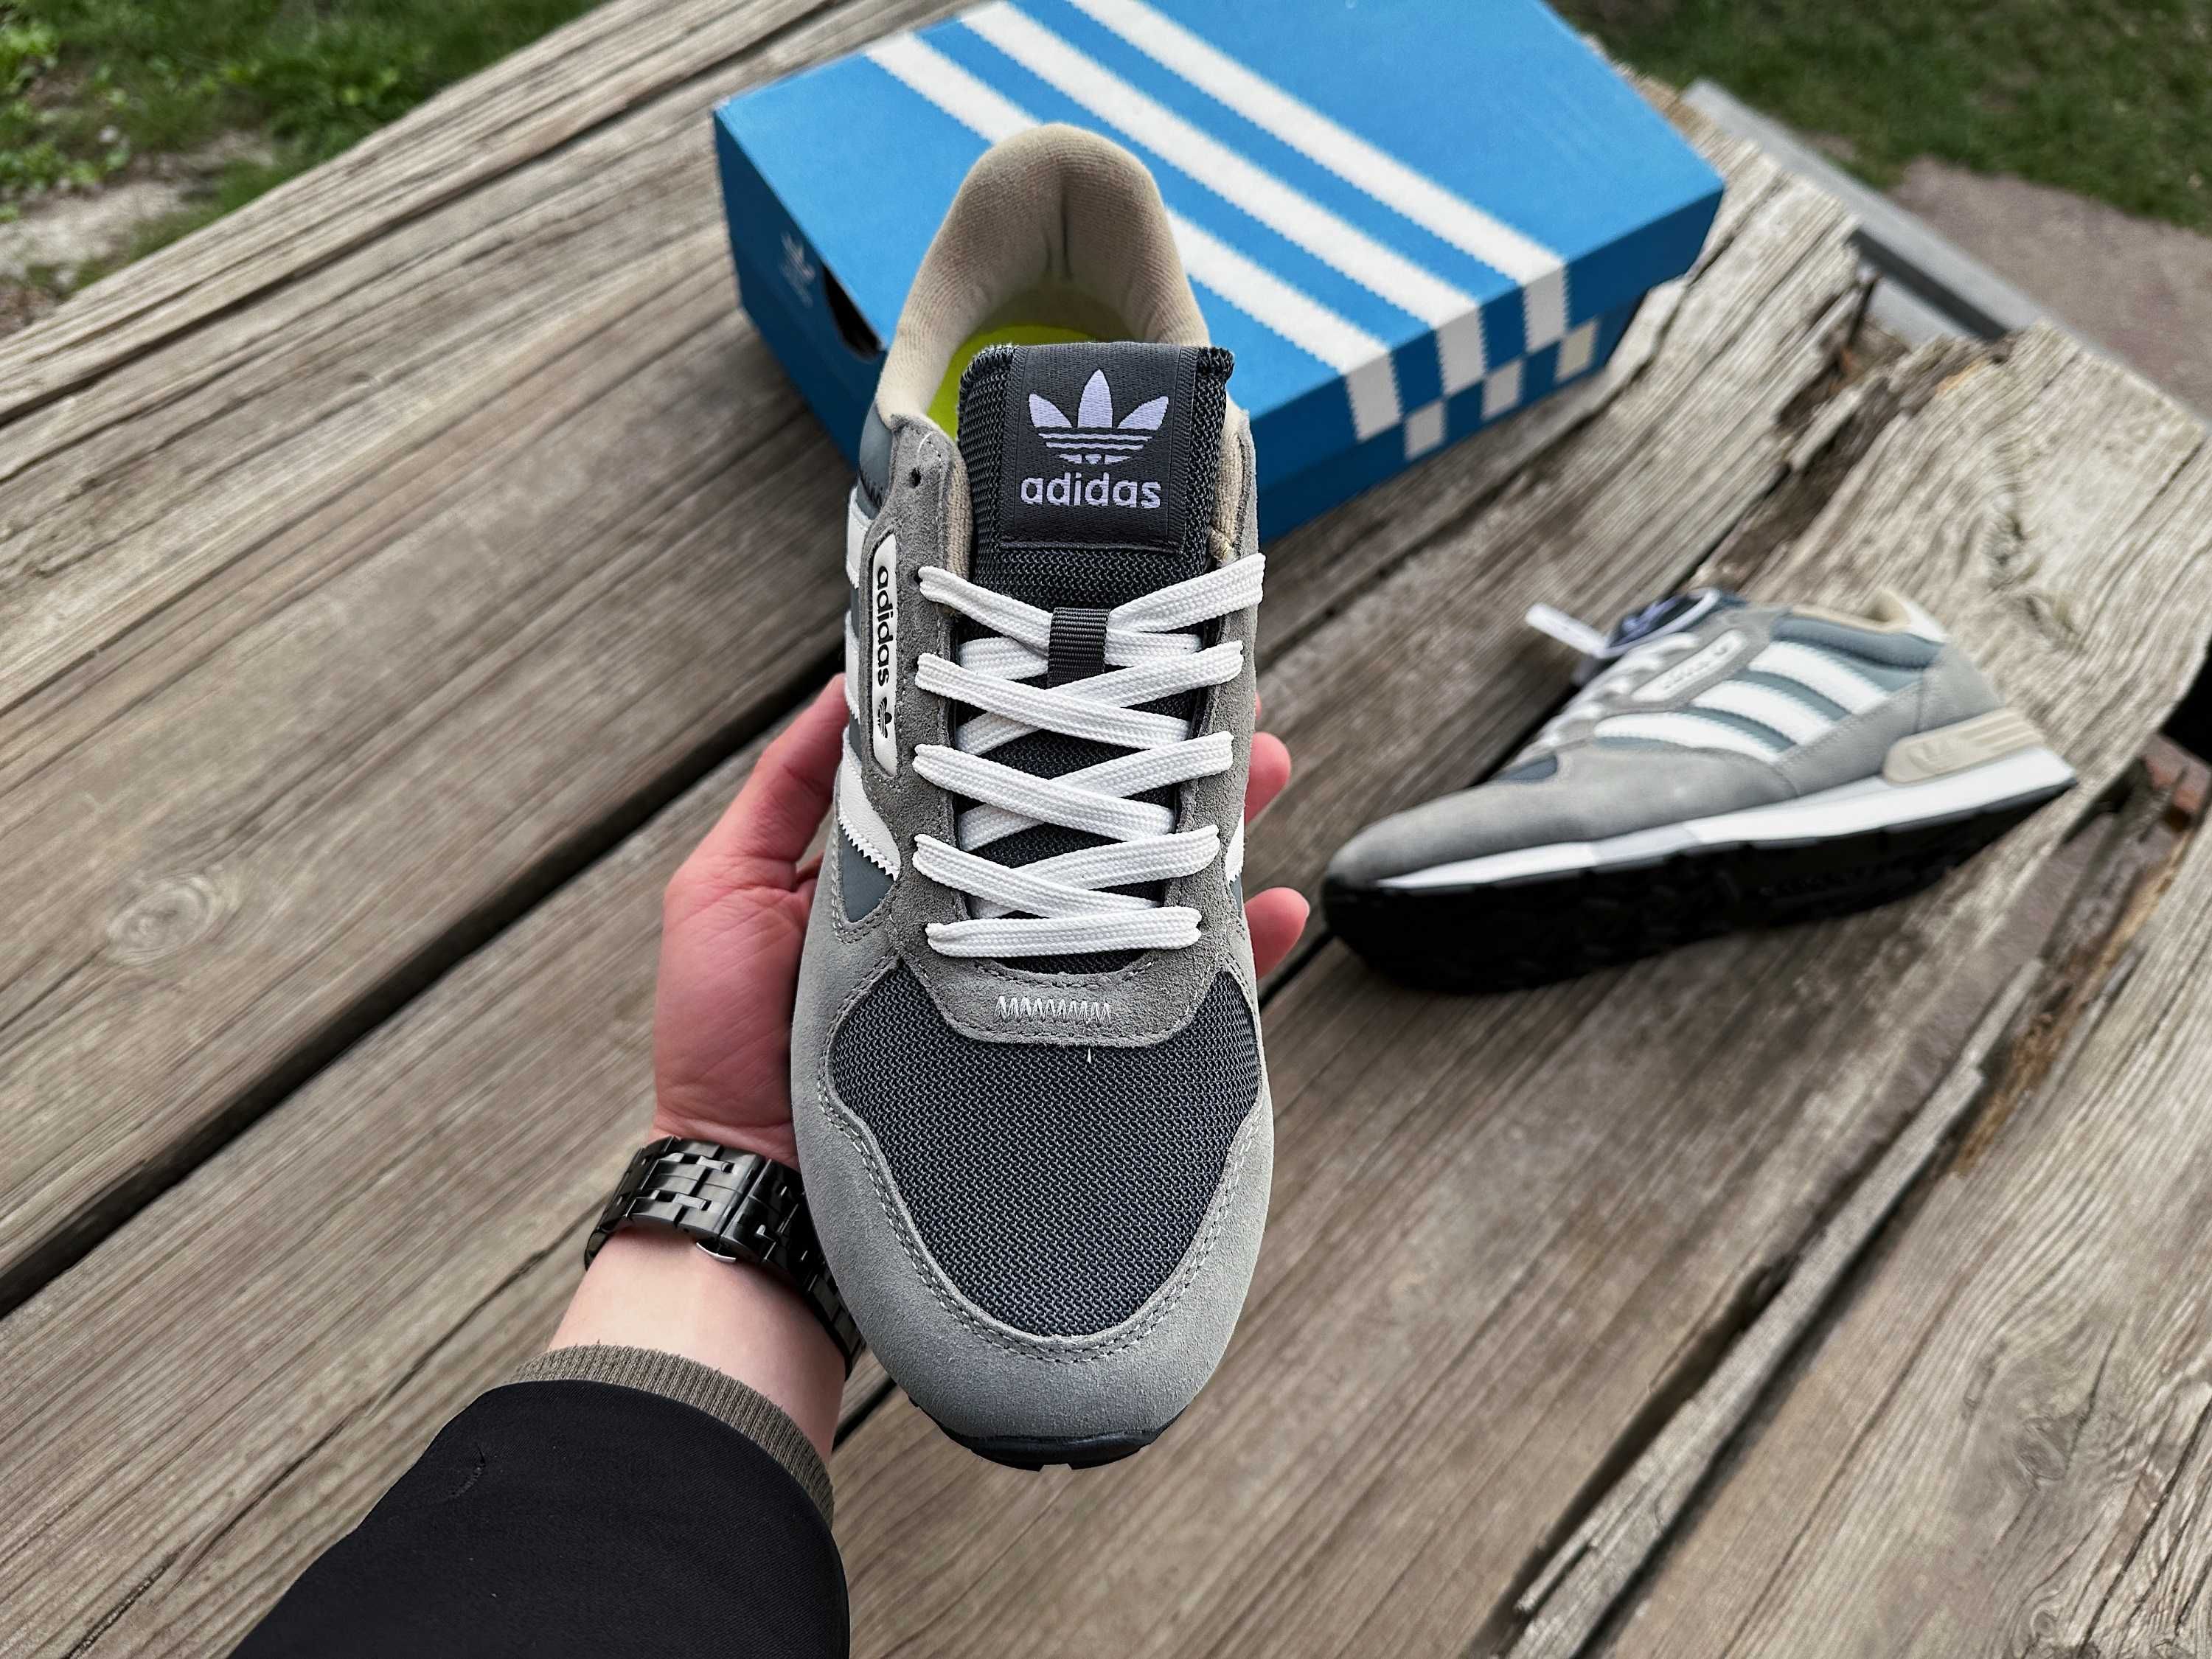 Мужские кроссовки Adidas Treziod 2 Grey серые размер 41-46